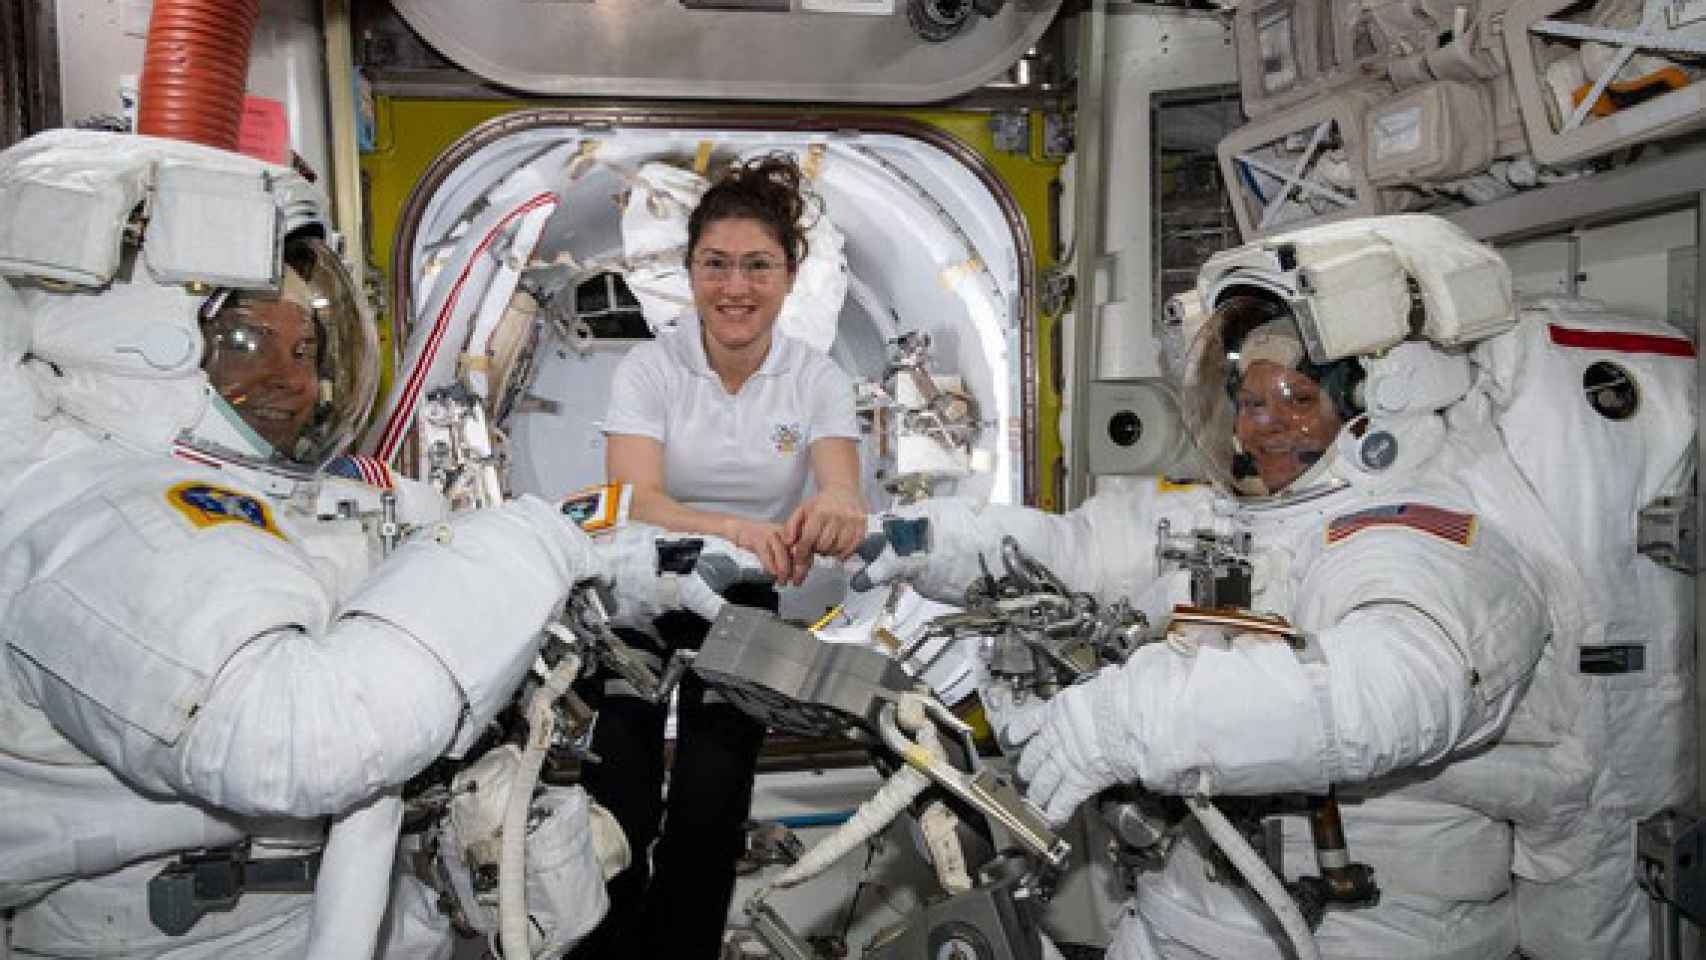 La astronauta de la NASA Christina Koch (centro) asiste a sus compañeros astronautas Nick Hague (izquierda) y Anne McClain (derechea) para ajustar sus trajes espaciales poco antes de comenzar su primer paseo espacial el pasado 22 de marzo. /